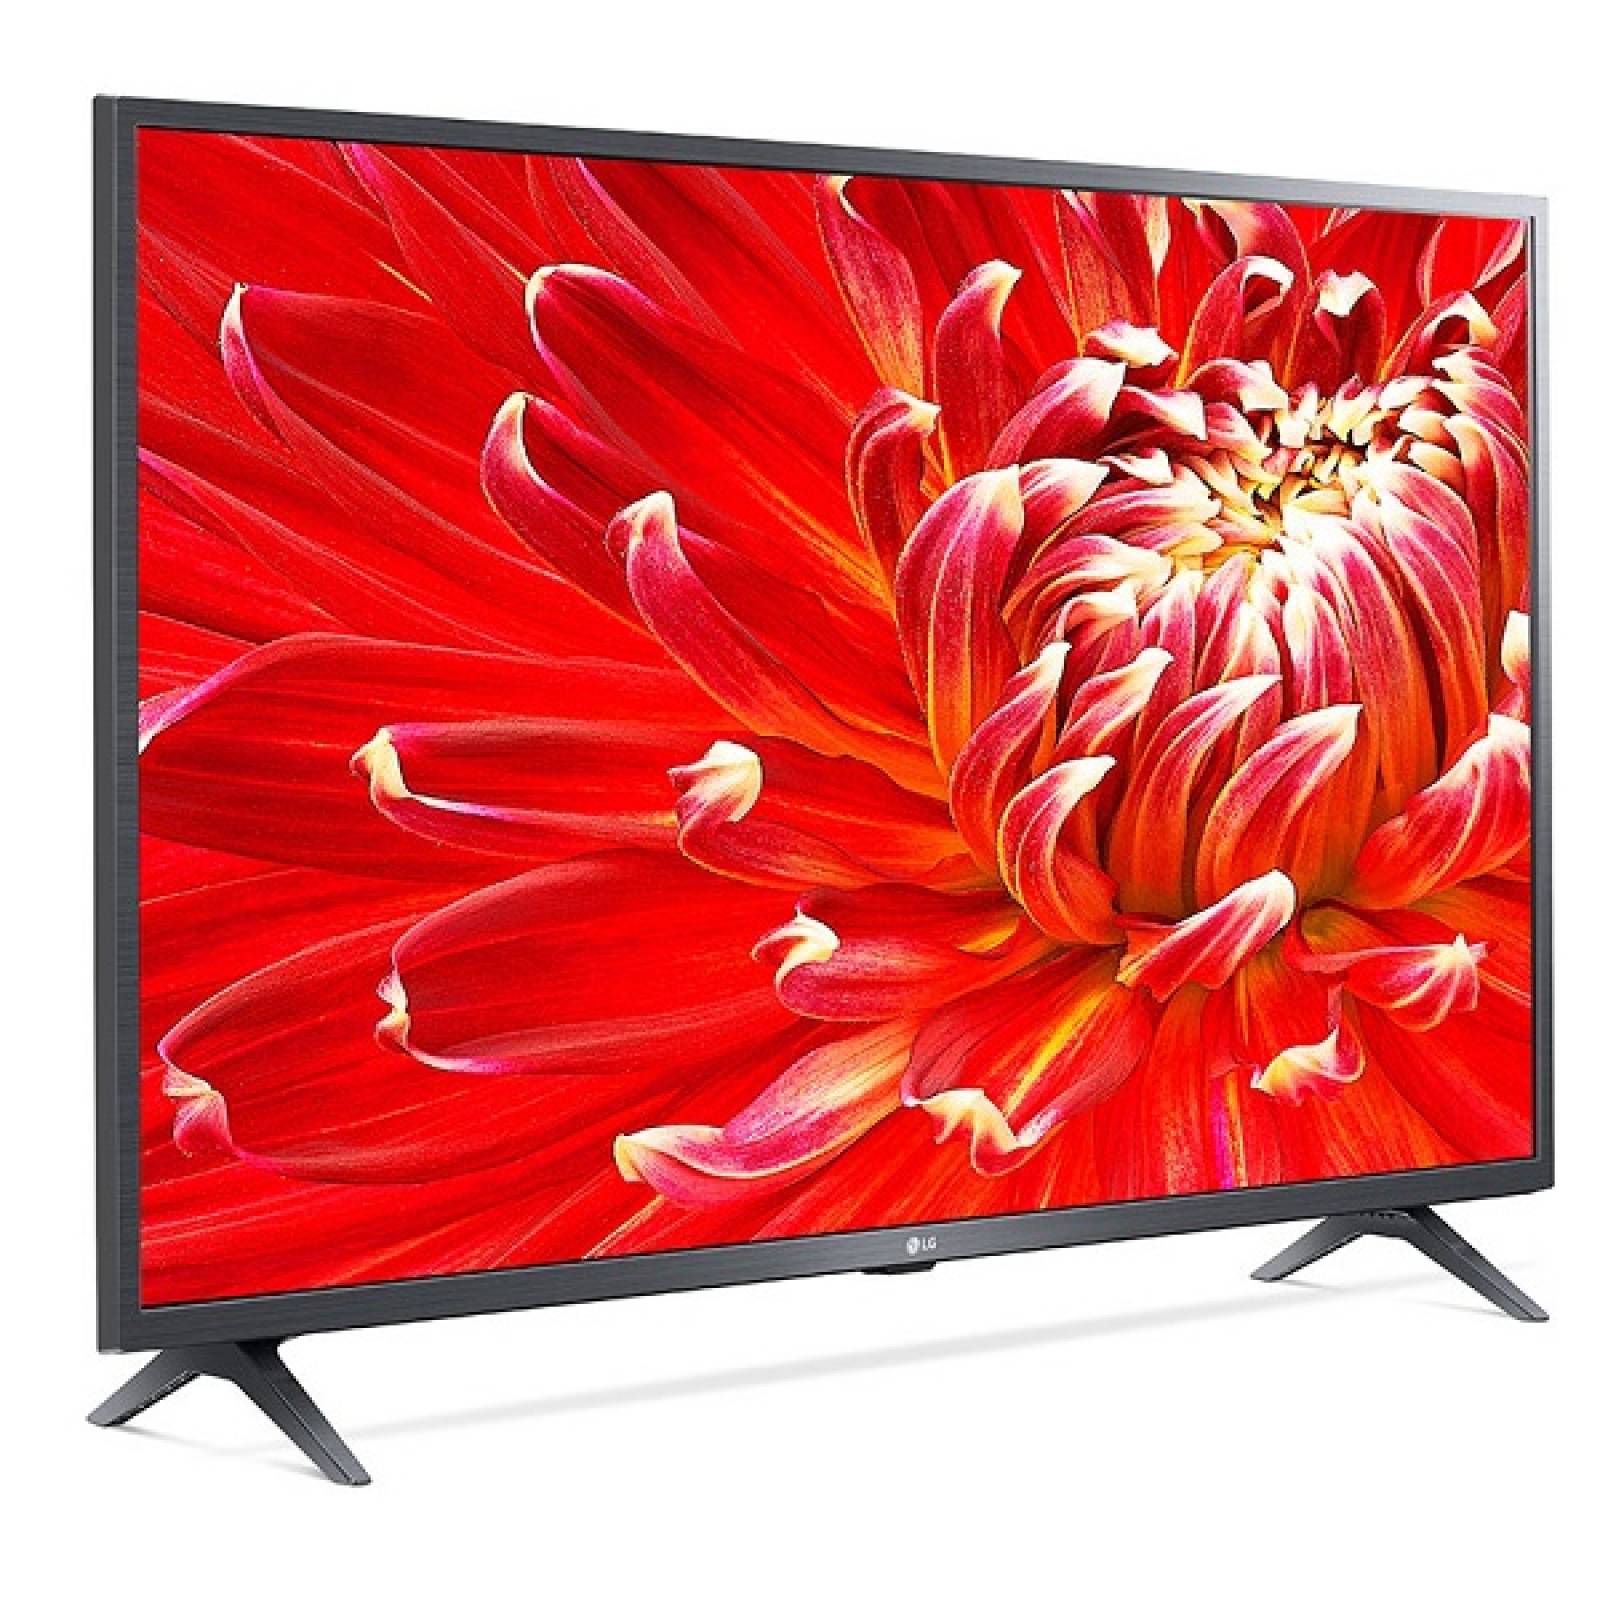 Smart TV 43 LG Full HD Active HDR Bluetooth 43LM6300PUB - Reacondicionado